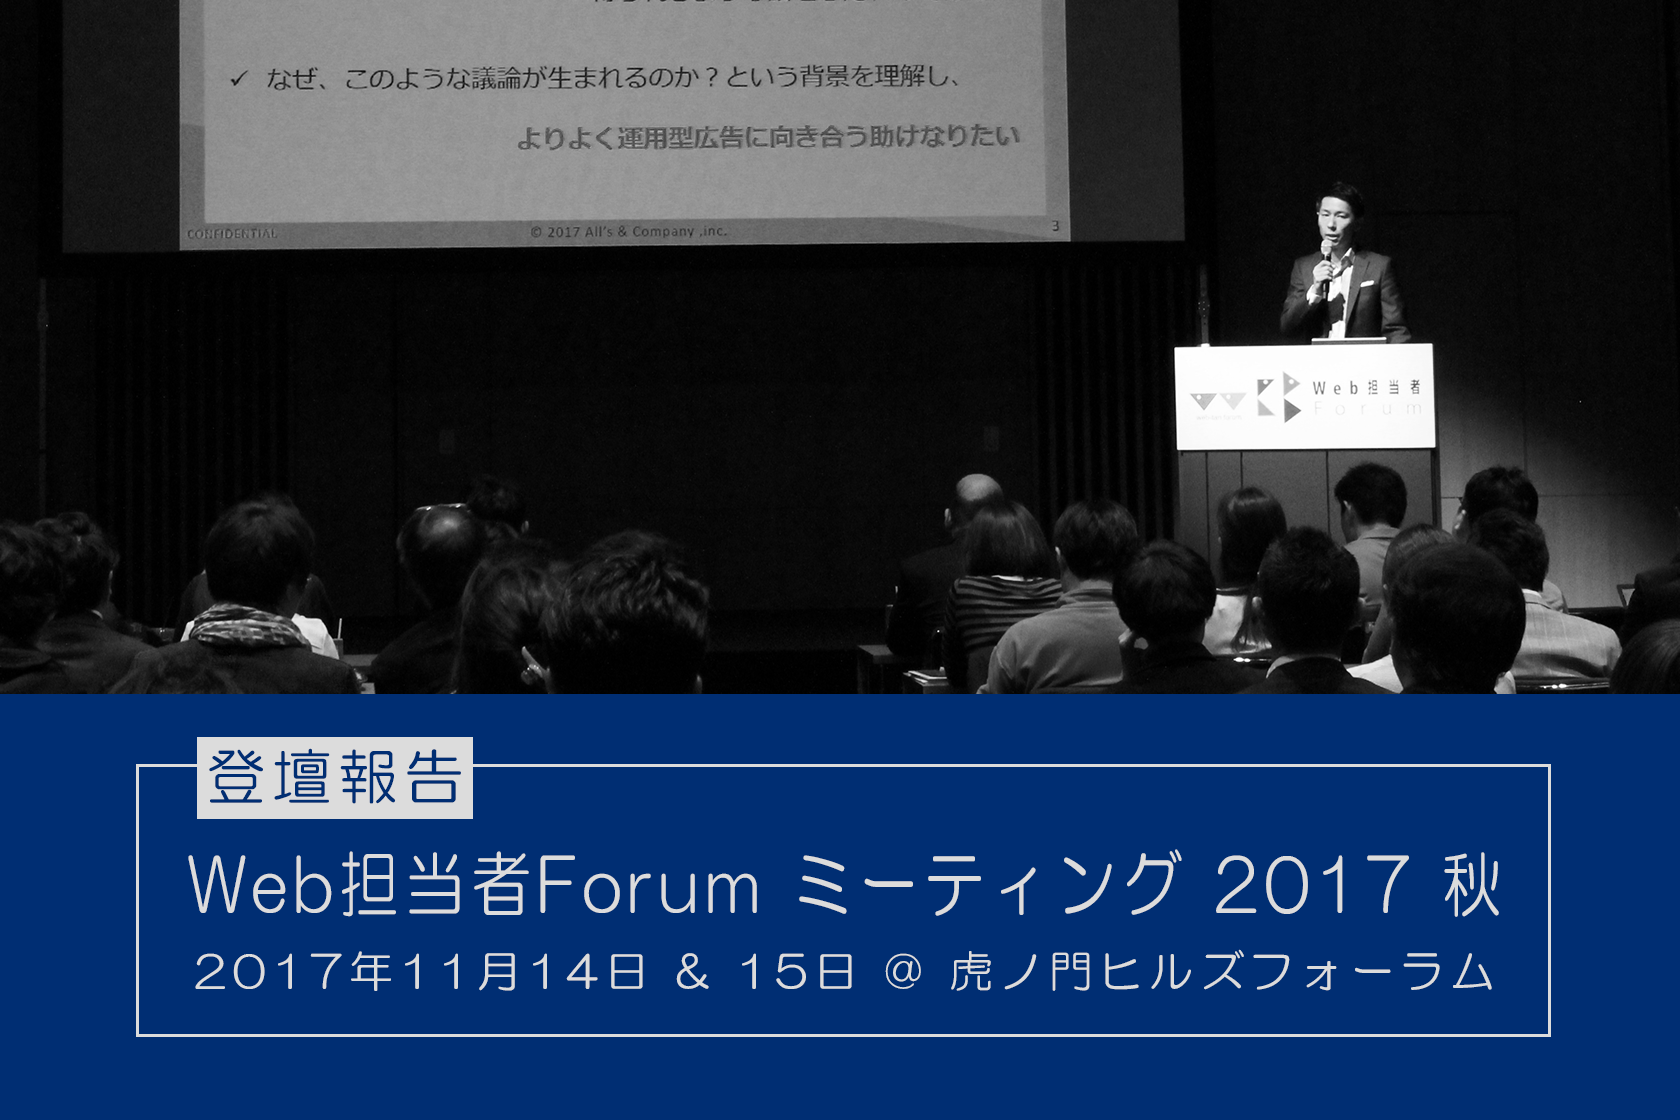 『Web担当者Forum ミーティング 2017 秋』に登壇しました